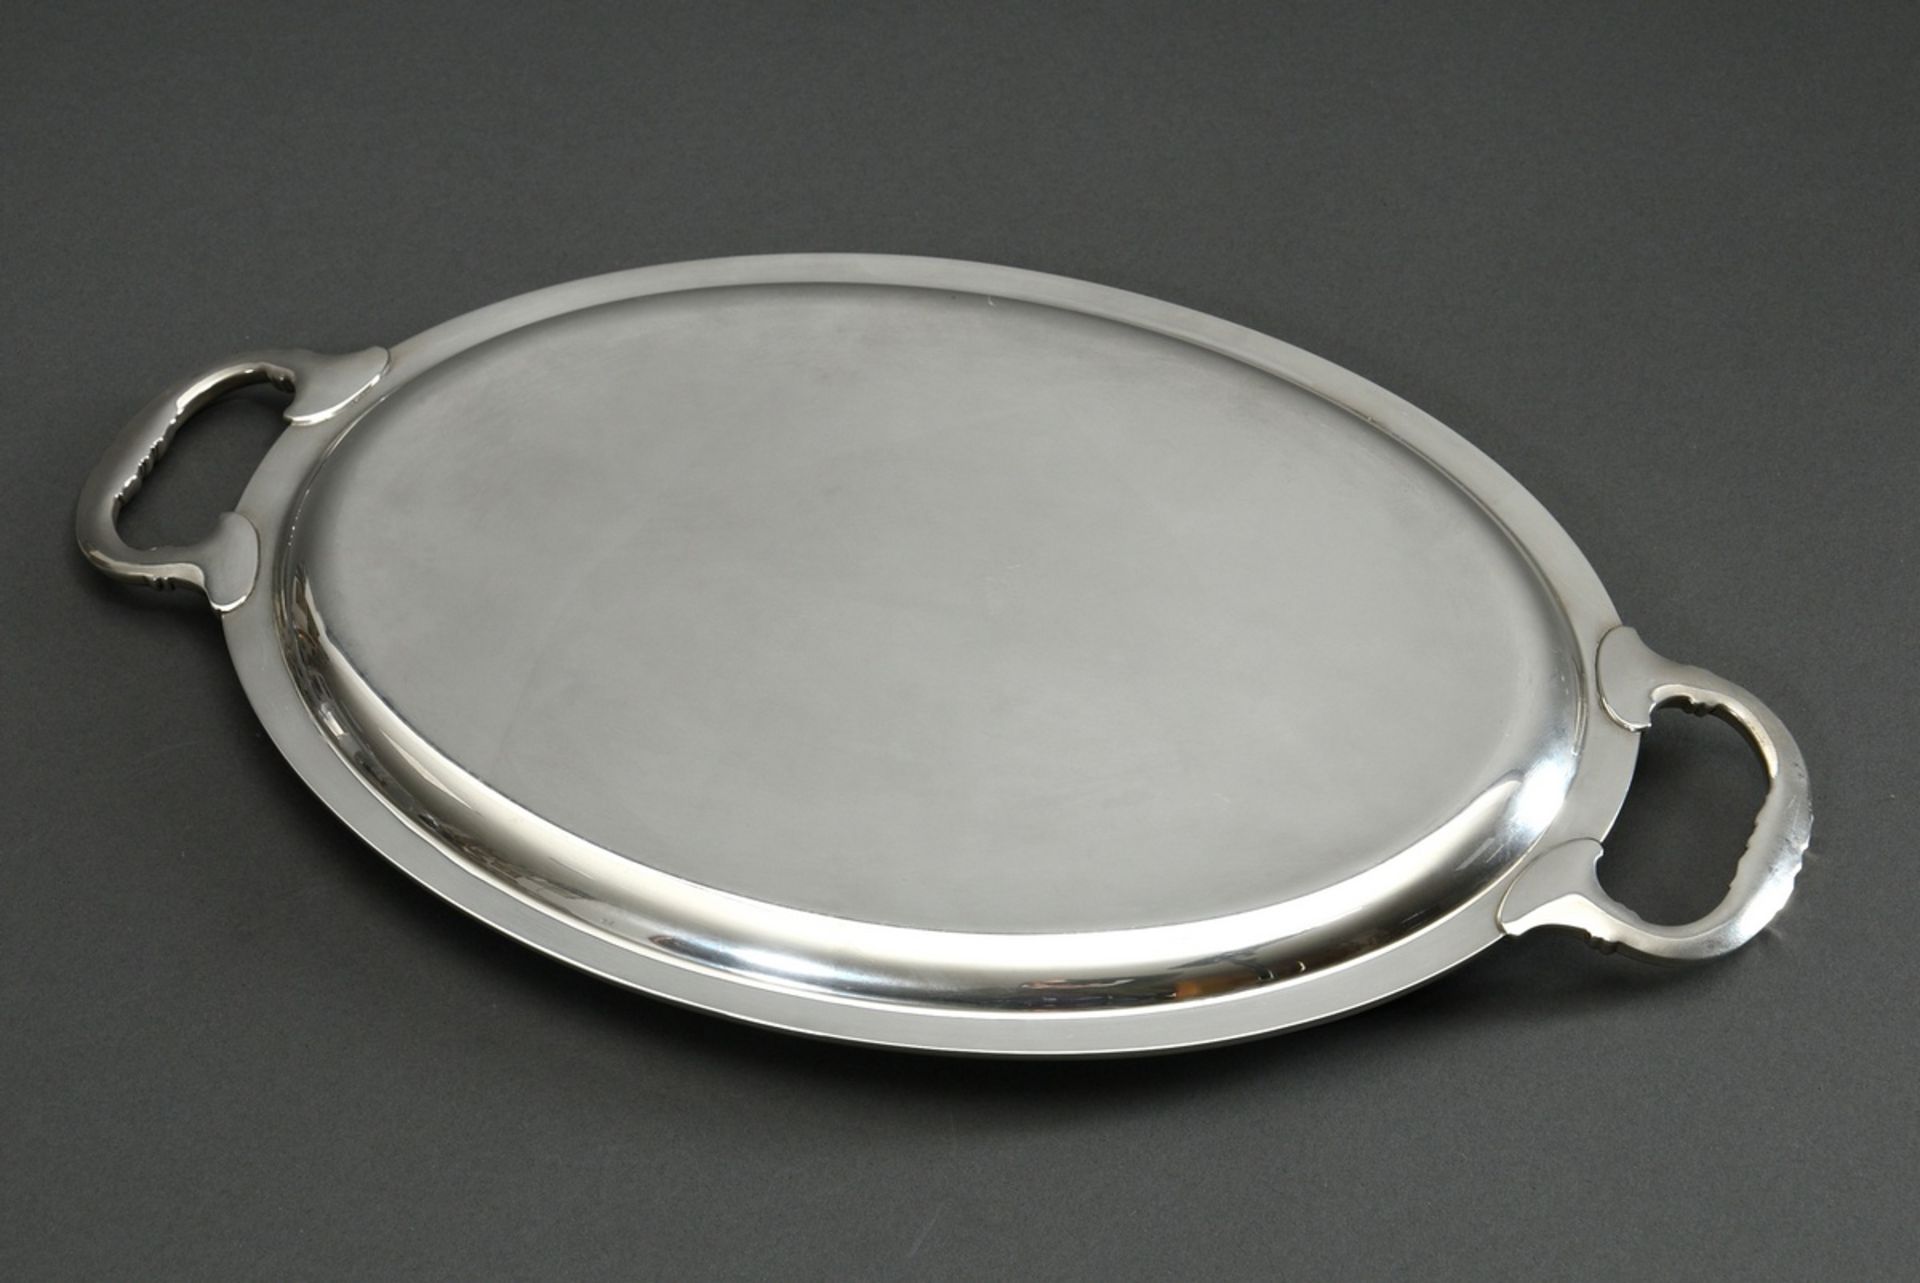 Ovales Tablett in klassischer Façon mit Reliefrand und -griffen, Silber 800, 525g, 41,6x24,6cm, lei - Bild 3 aus 3